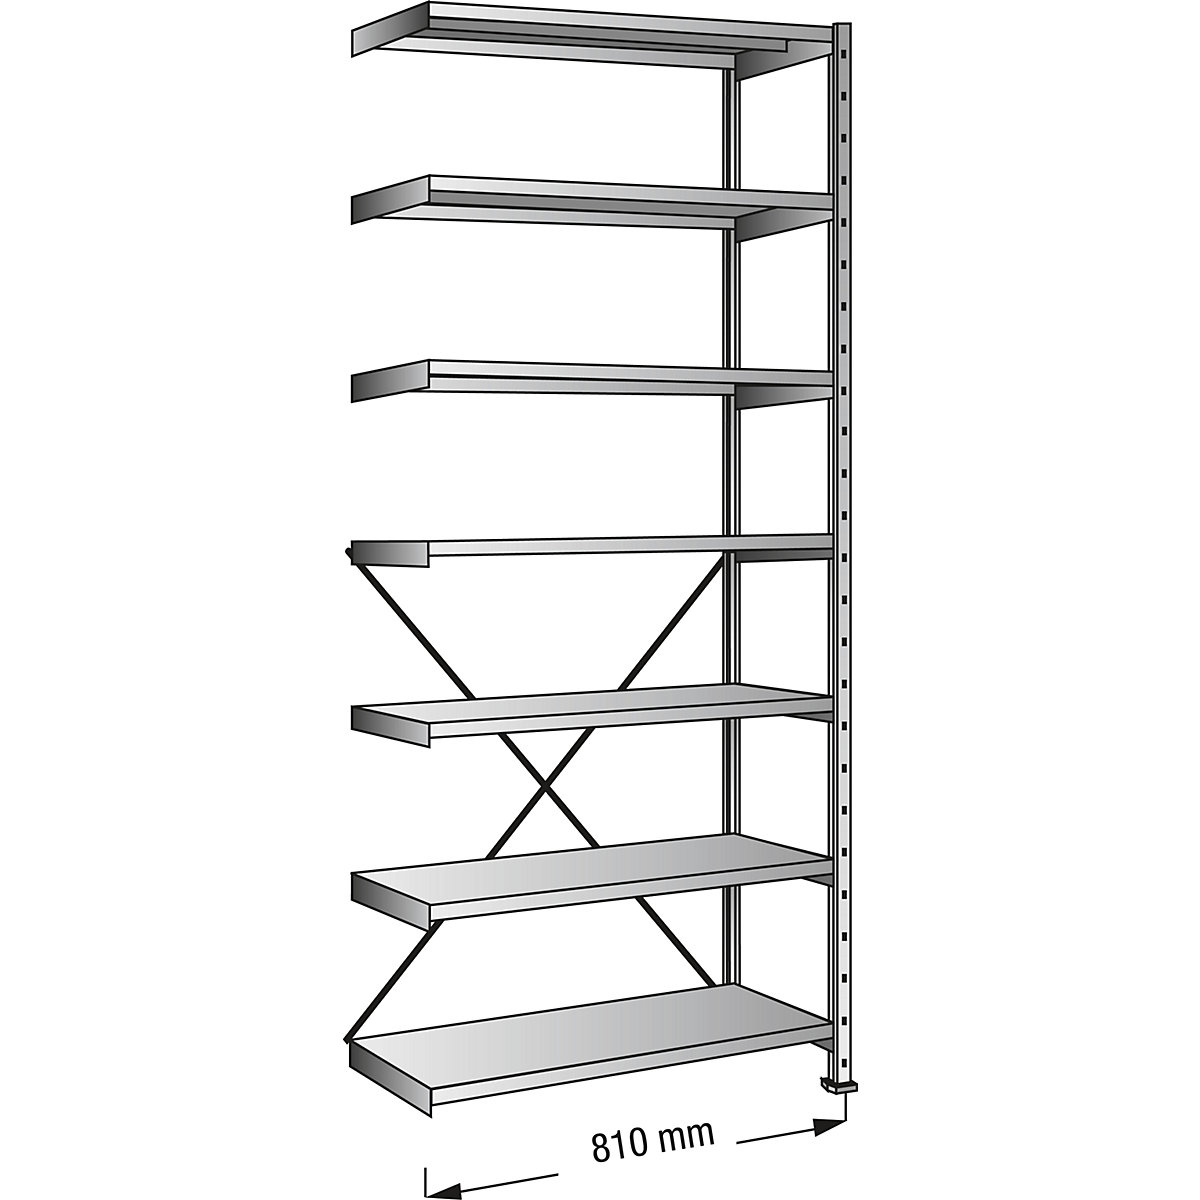 Boltless shelving unit, zinc plated, 7 shelves, height 2640 mm, shelf width 800 mm, depth 600 mm, extension shelf unit